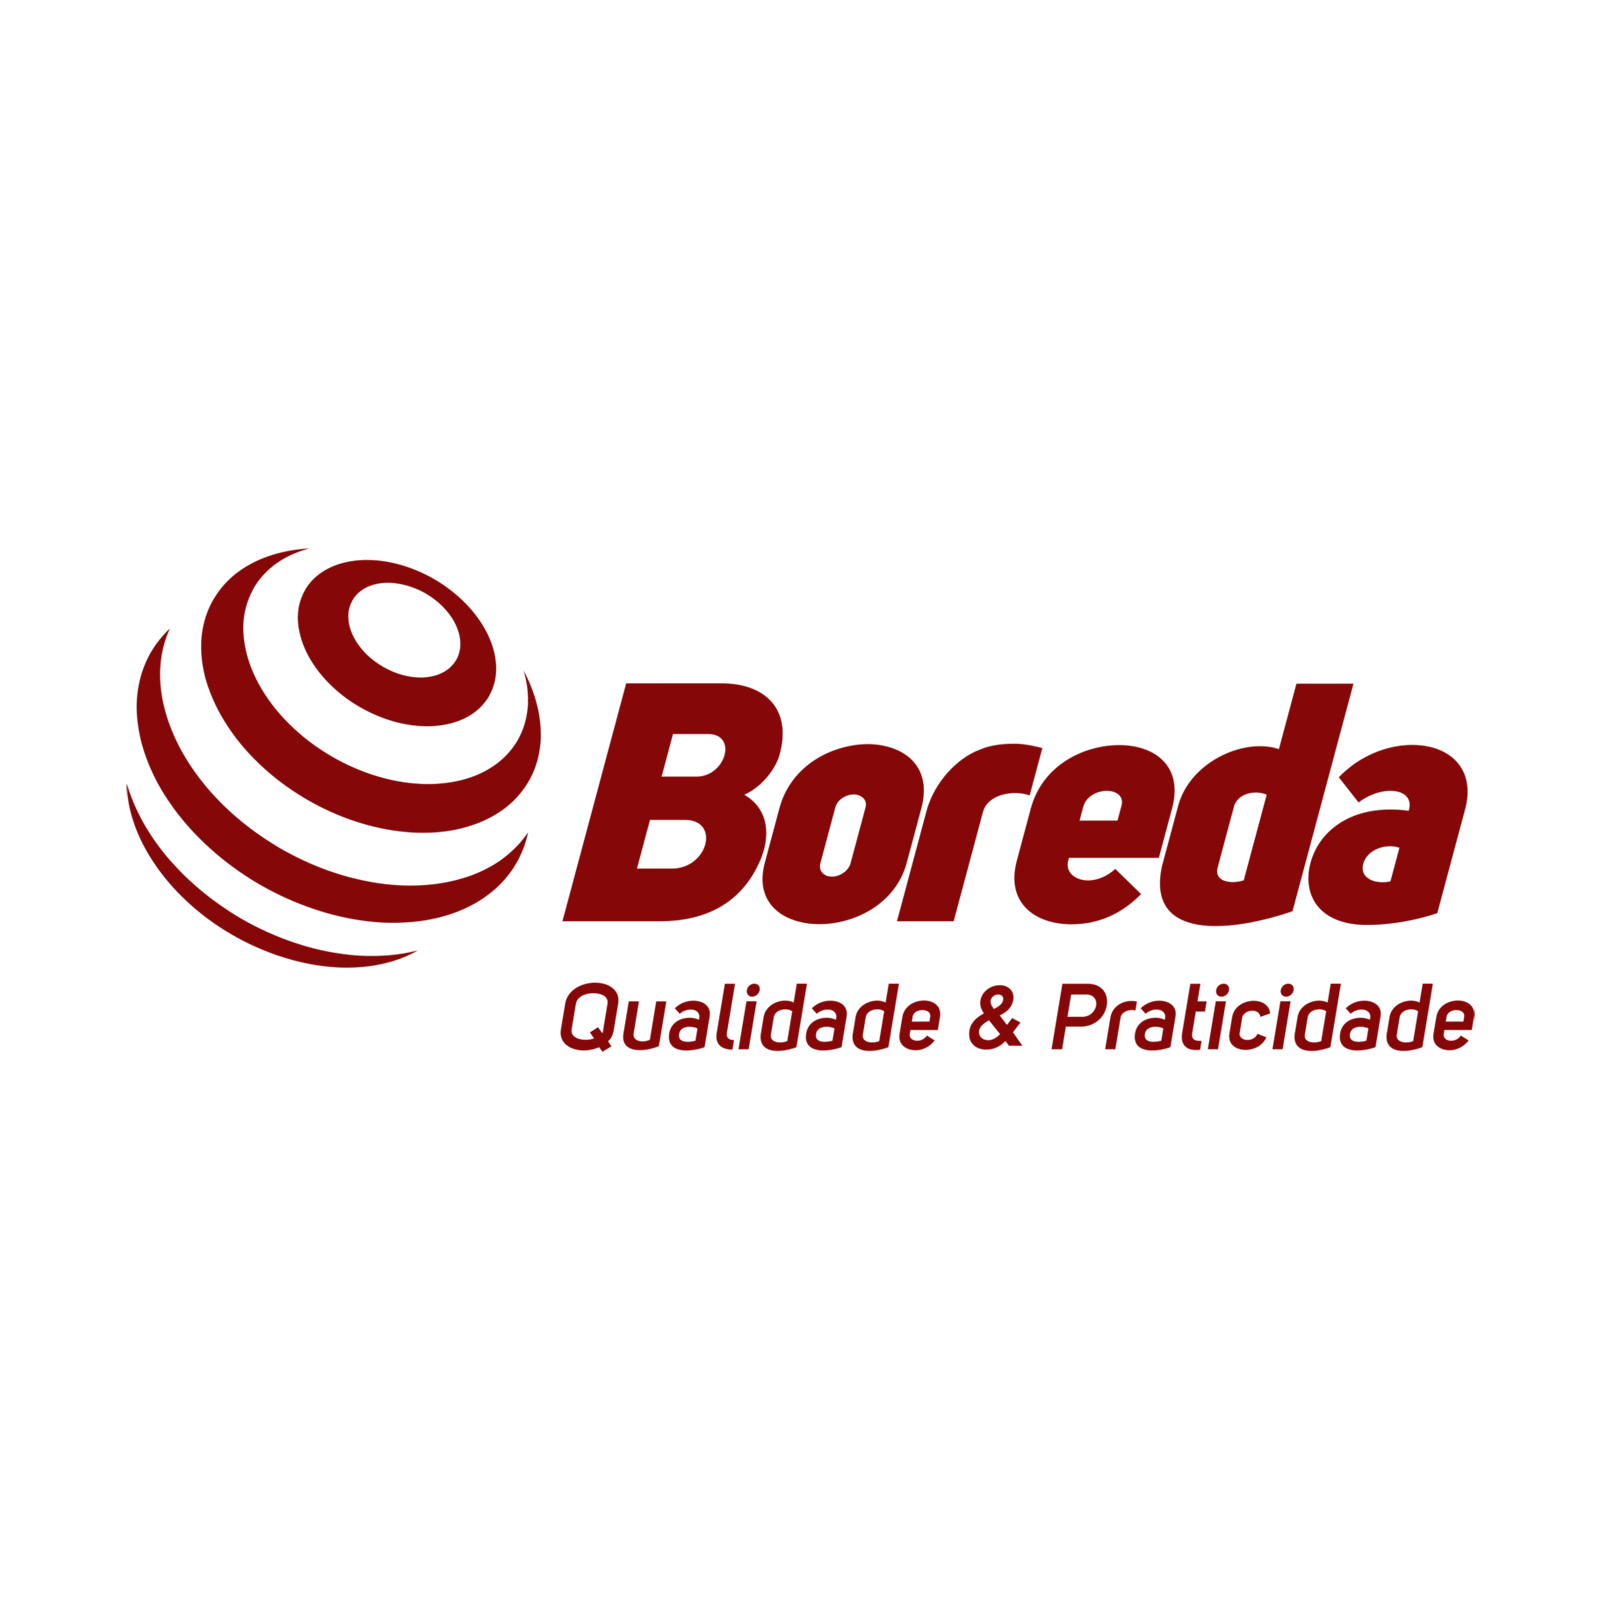 LOGO-BOREDA-2015-branco-1536x574